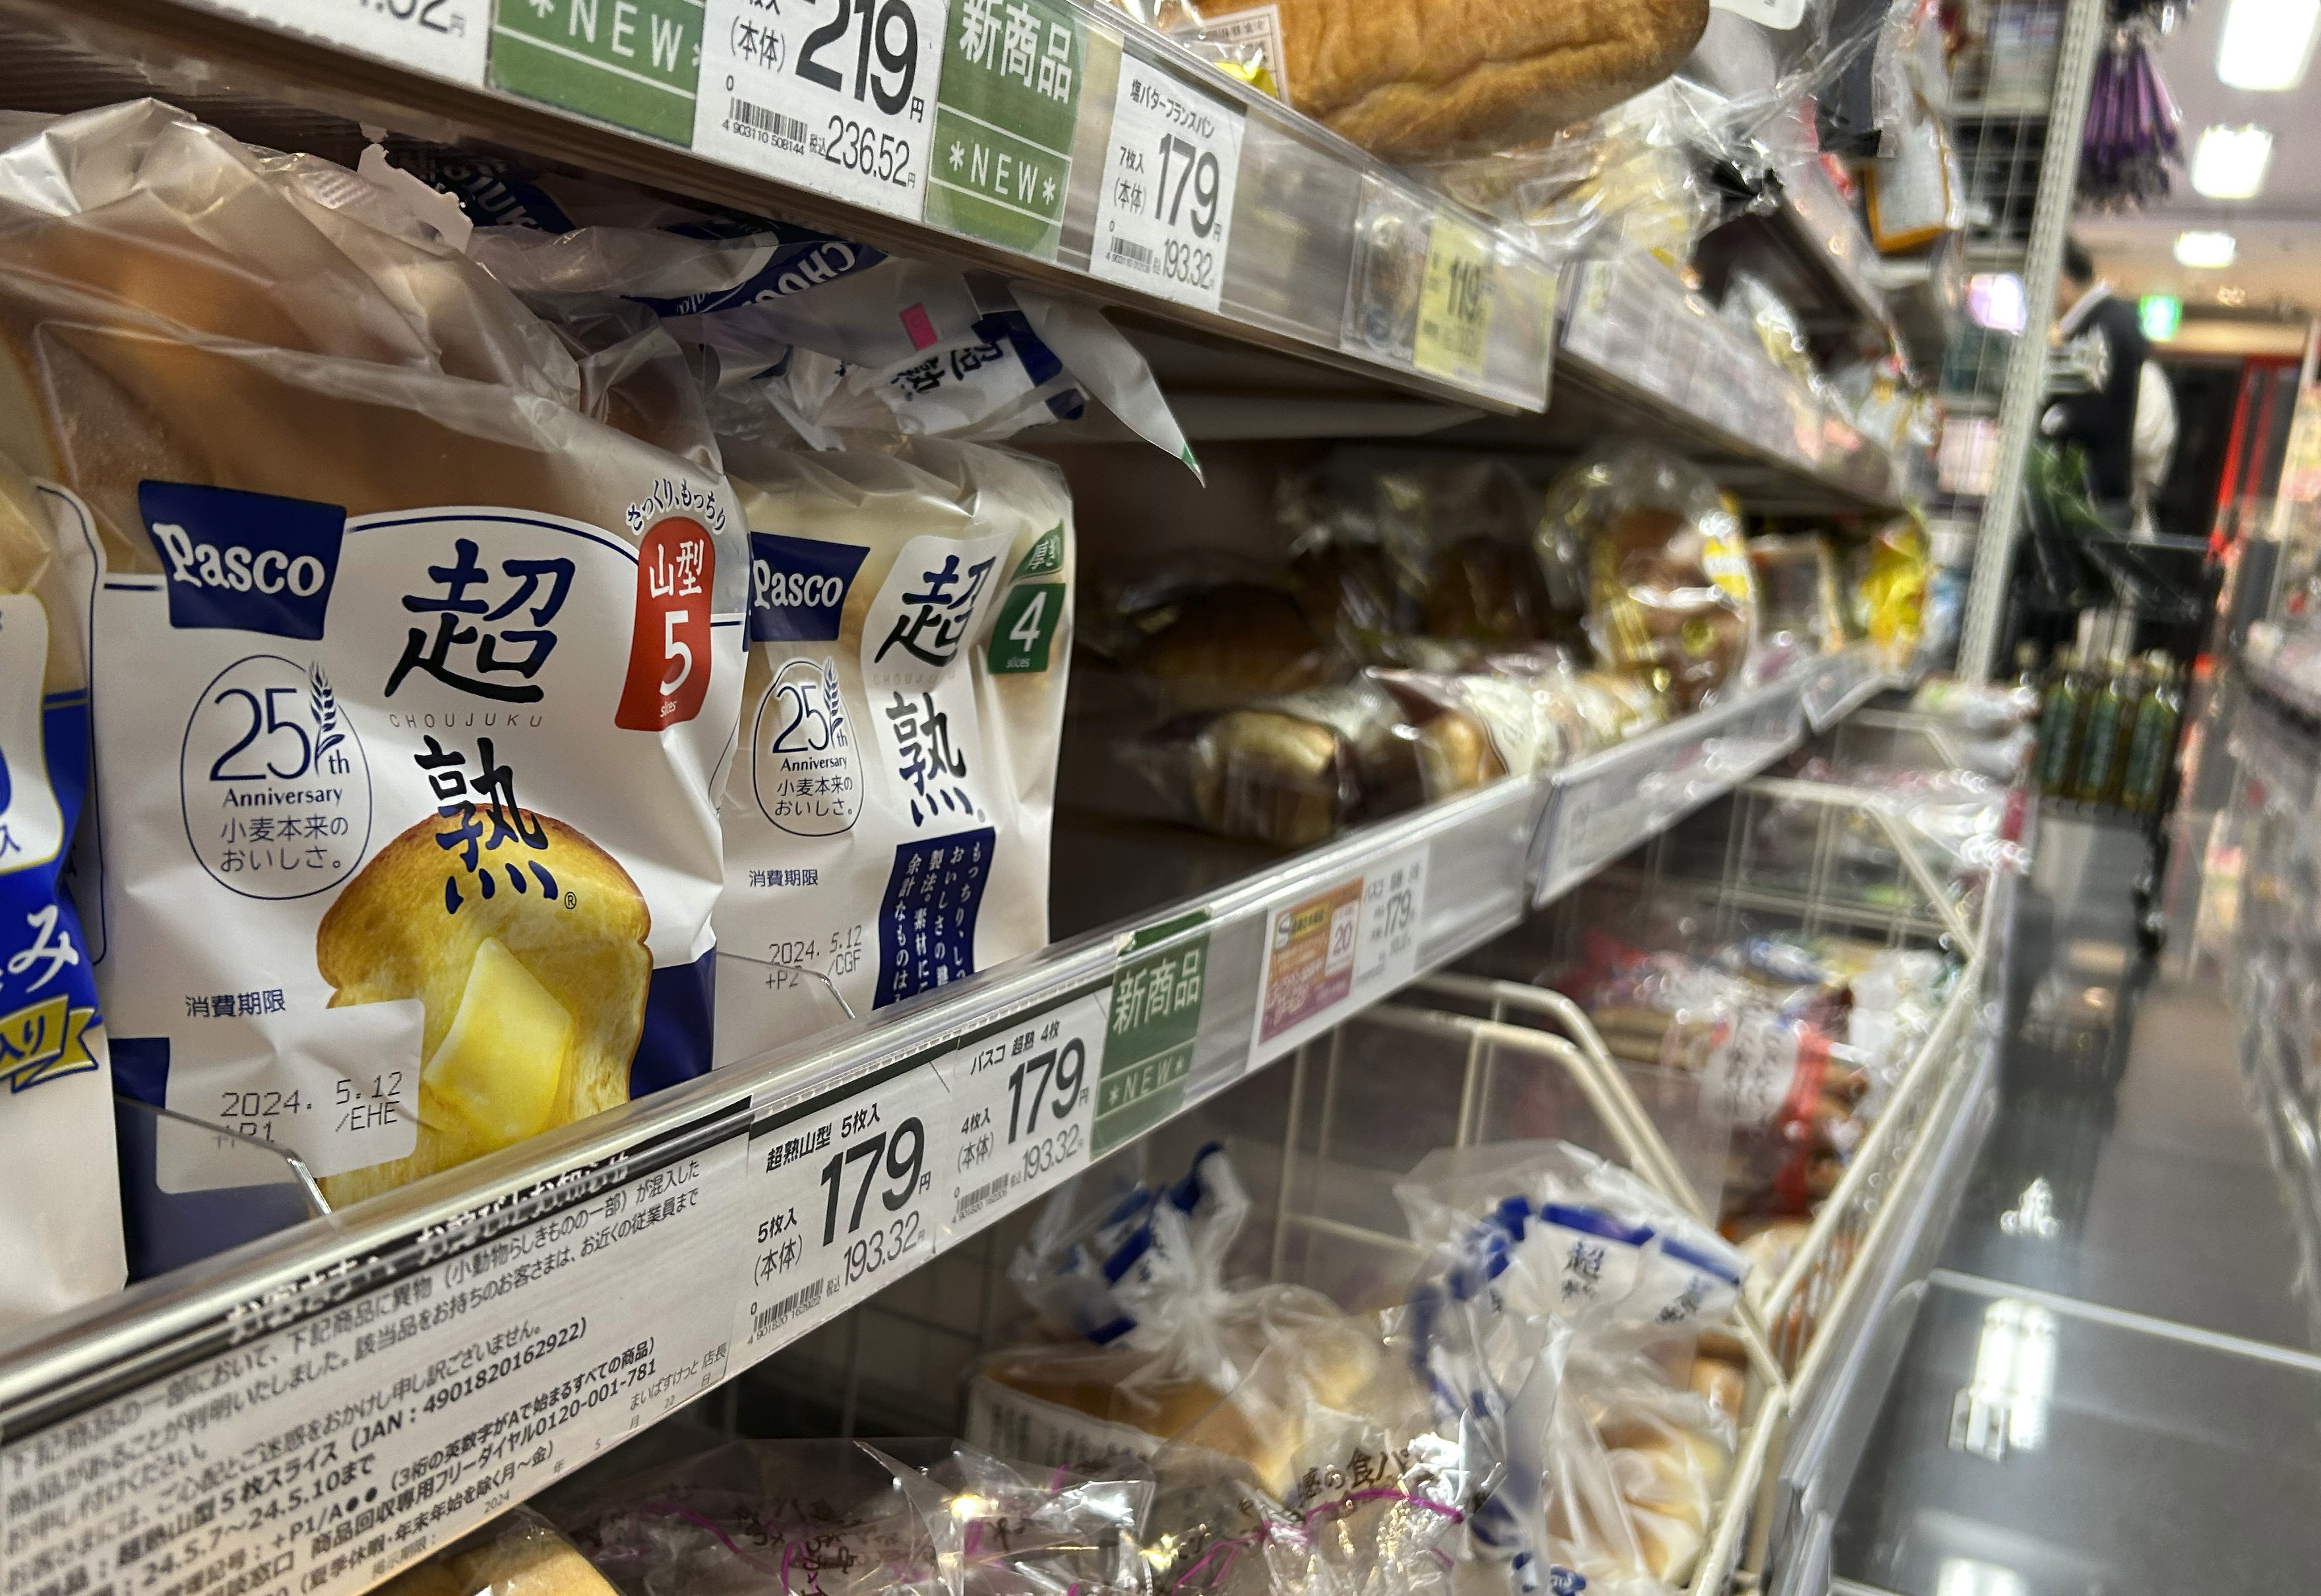 ขนมปังถูกเรียกคืนในประเทศญี่ปุ่นหลังพบ “ซากสัตว์” ในขนมปัง